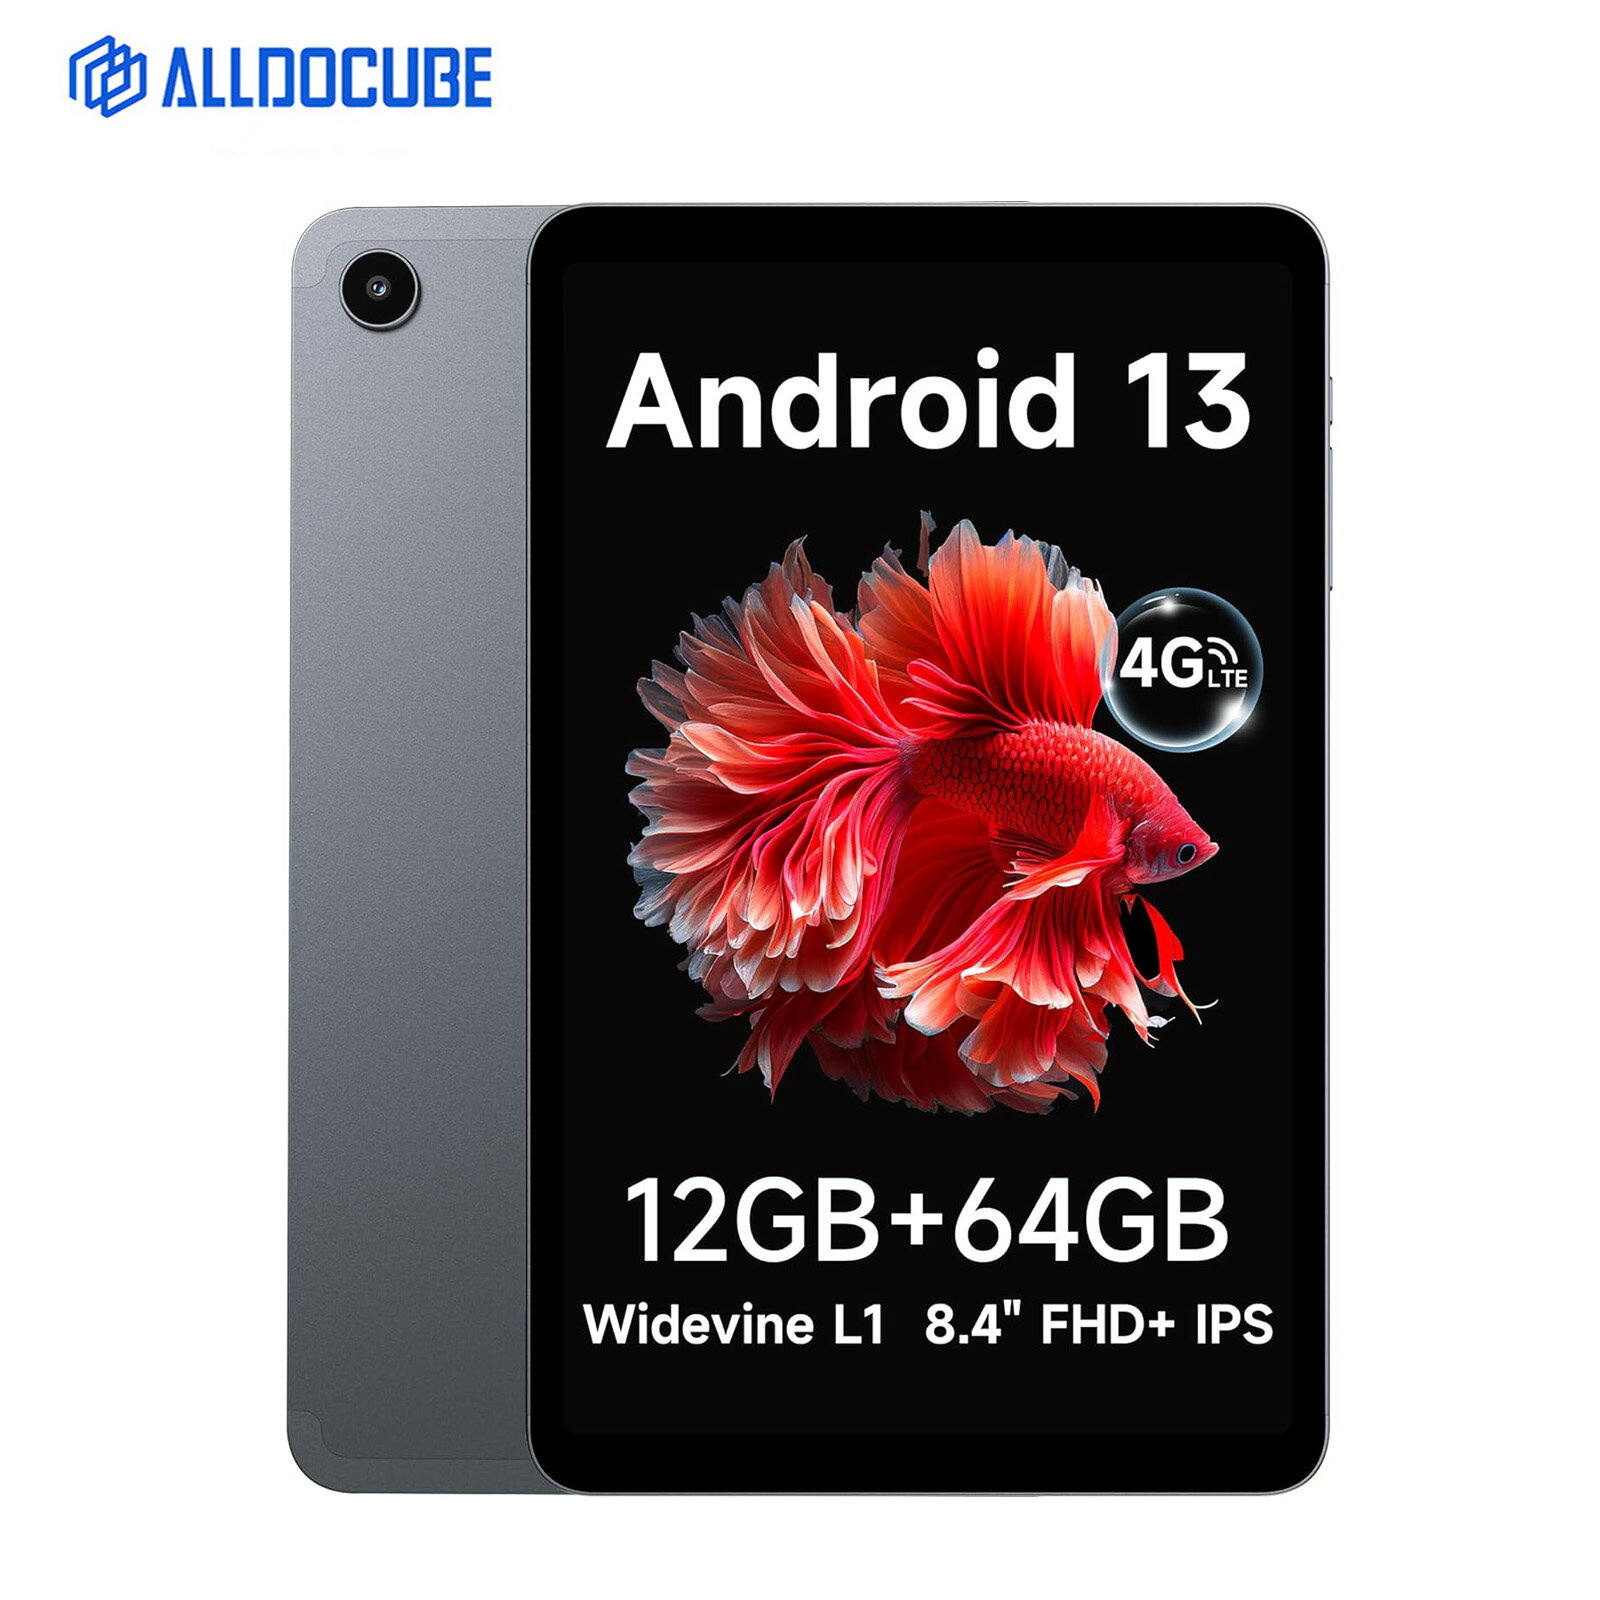 ALLDOCUBE iPlay50 mini 8インチタブレット Android 13タブレット wifiモデル 4GLTE通信可 FHD1920*1200 Incell IPSディスプレイ 12GB(4+8拡張) 64GBストレージ Widevine L1 8コアCPU SIMフリー GMS/PSE認証済 GPS機能付き